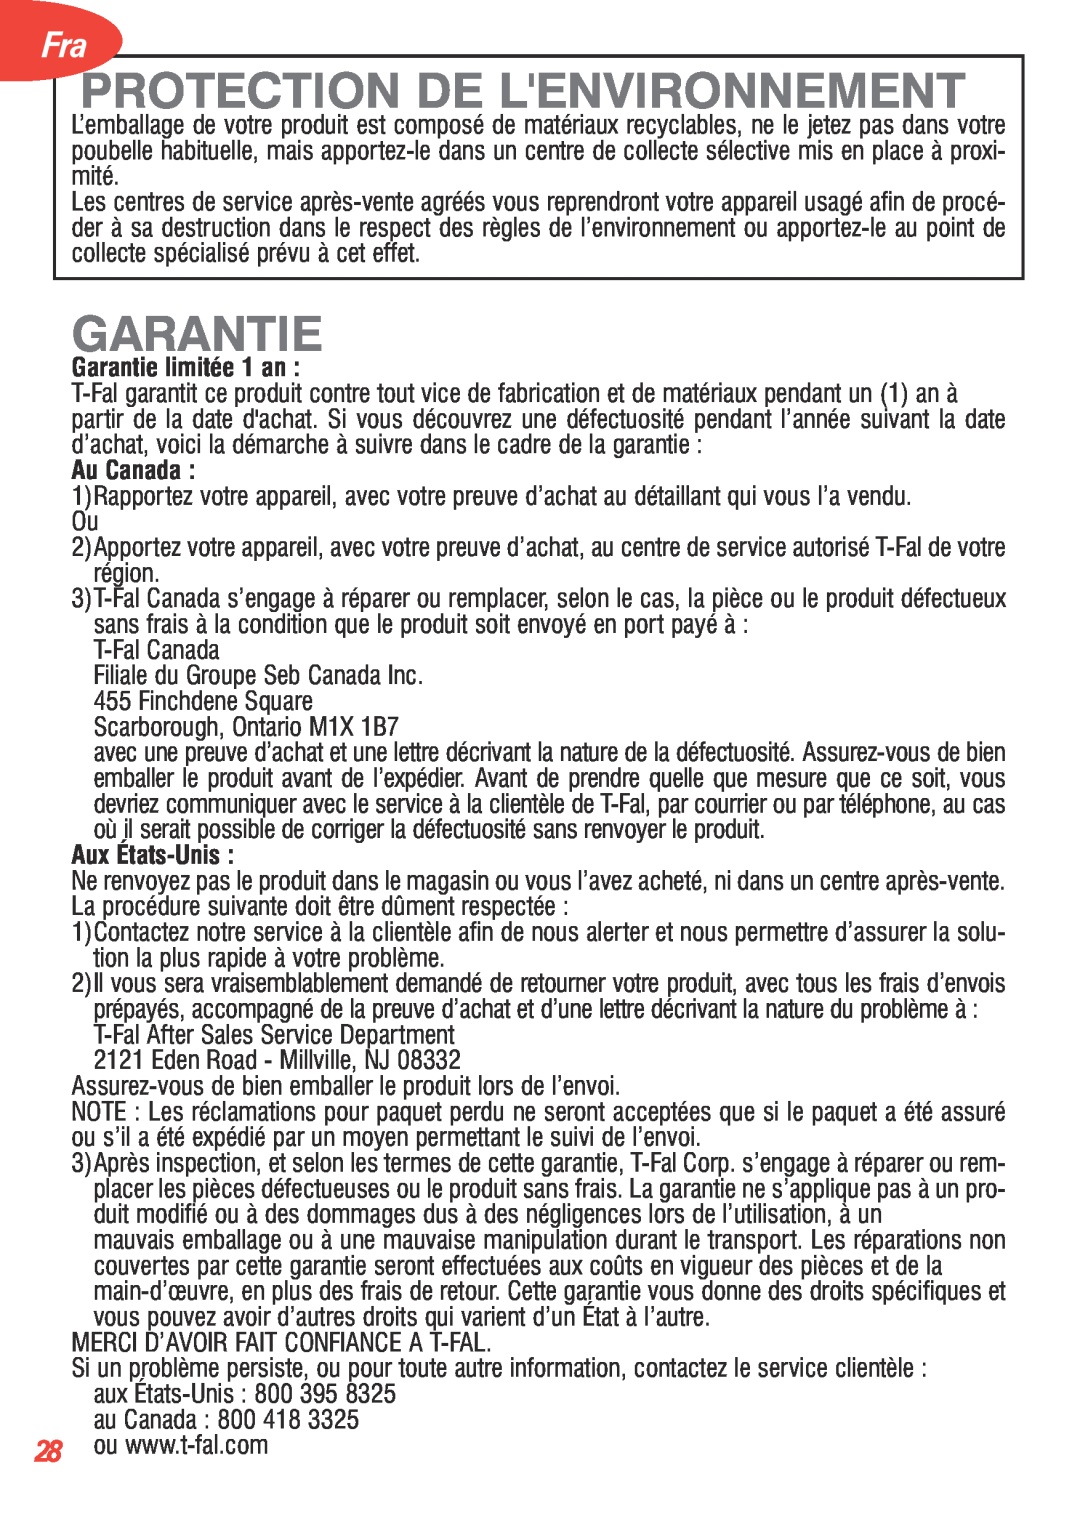 T-Fal 5252 manual Protection De Lenvironnement, Garantie limitée 1 an, Au Canada, Aux États-Unis 